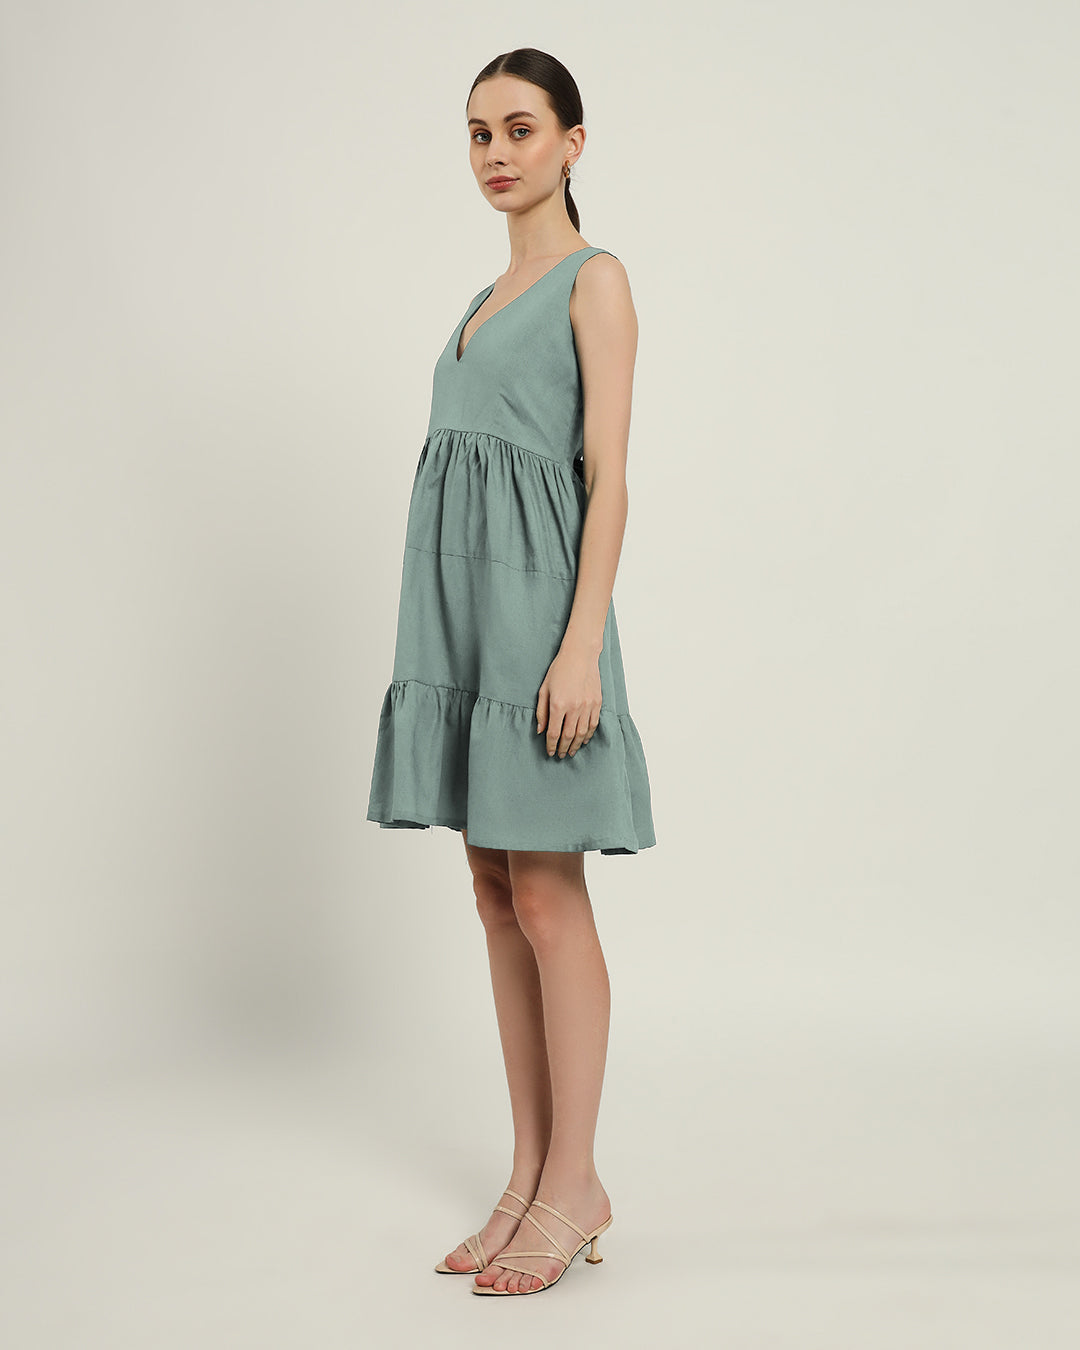 The Minsk Daisy Carolina Linen Dress